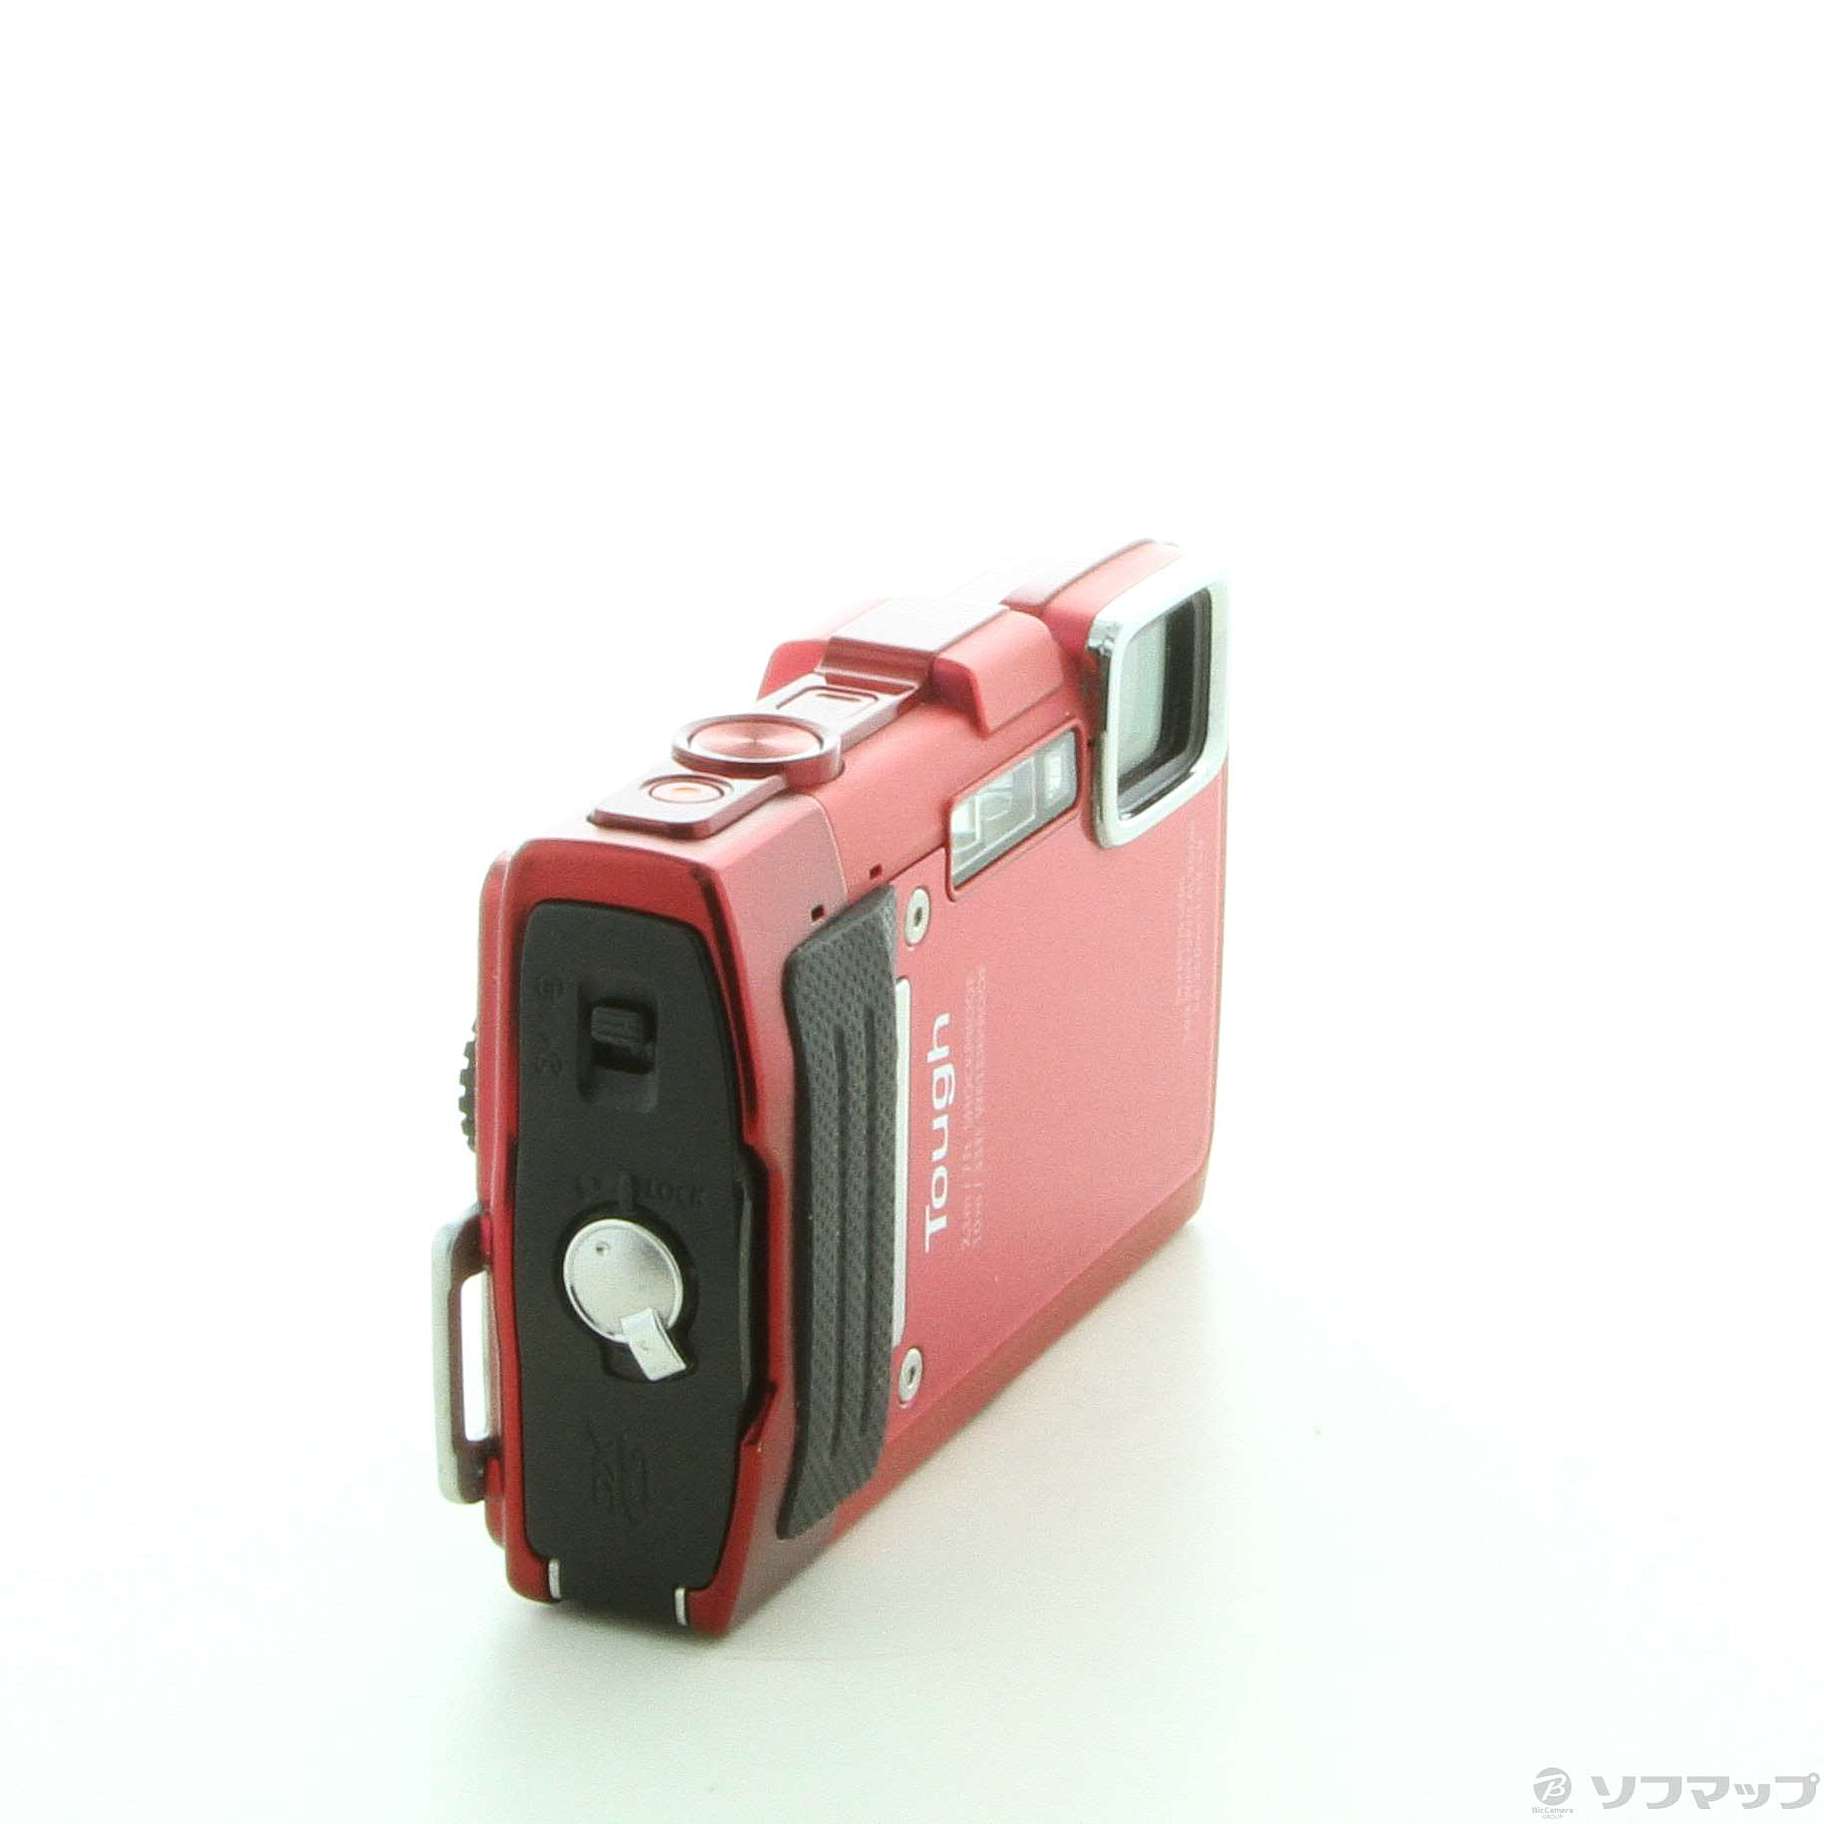 経典 OLYMPUS デジタルカメラ STYLUS TG-830 1600万画素 裏面照射型